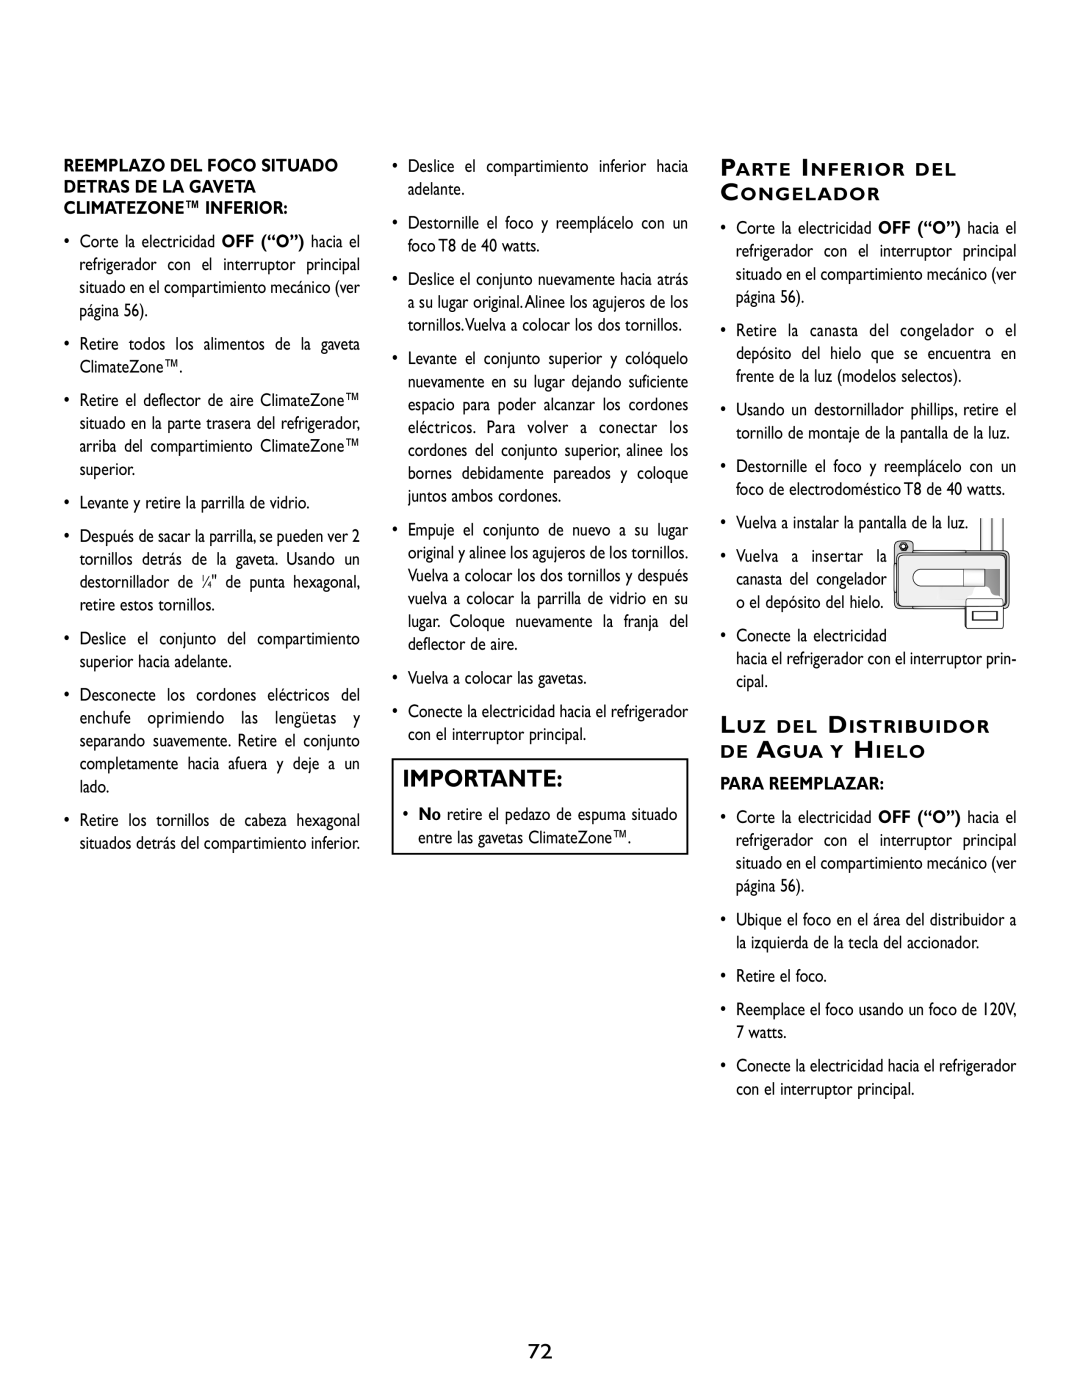 Maytag RJRS4870D manual Importante, Parte Inferior Del Congelador, Luz Del Distribuidor De Agua Y Hielo, Para Reemplazar 